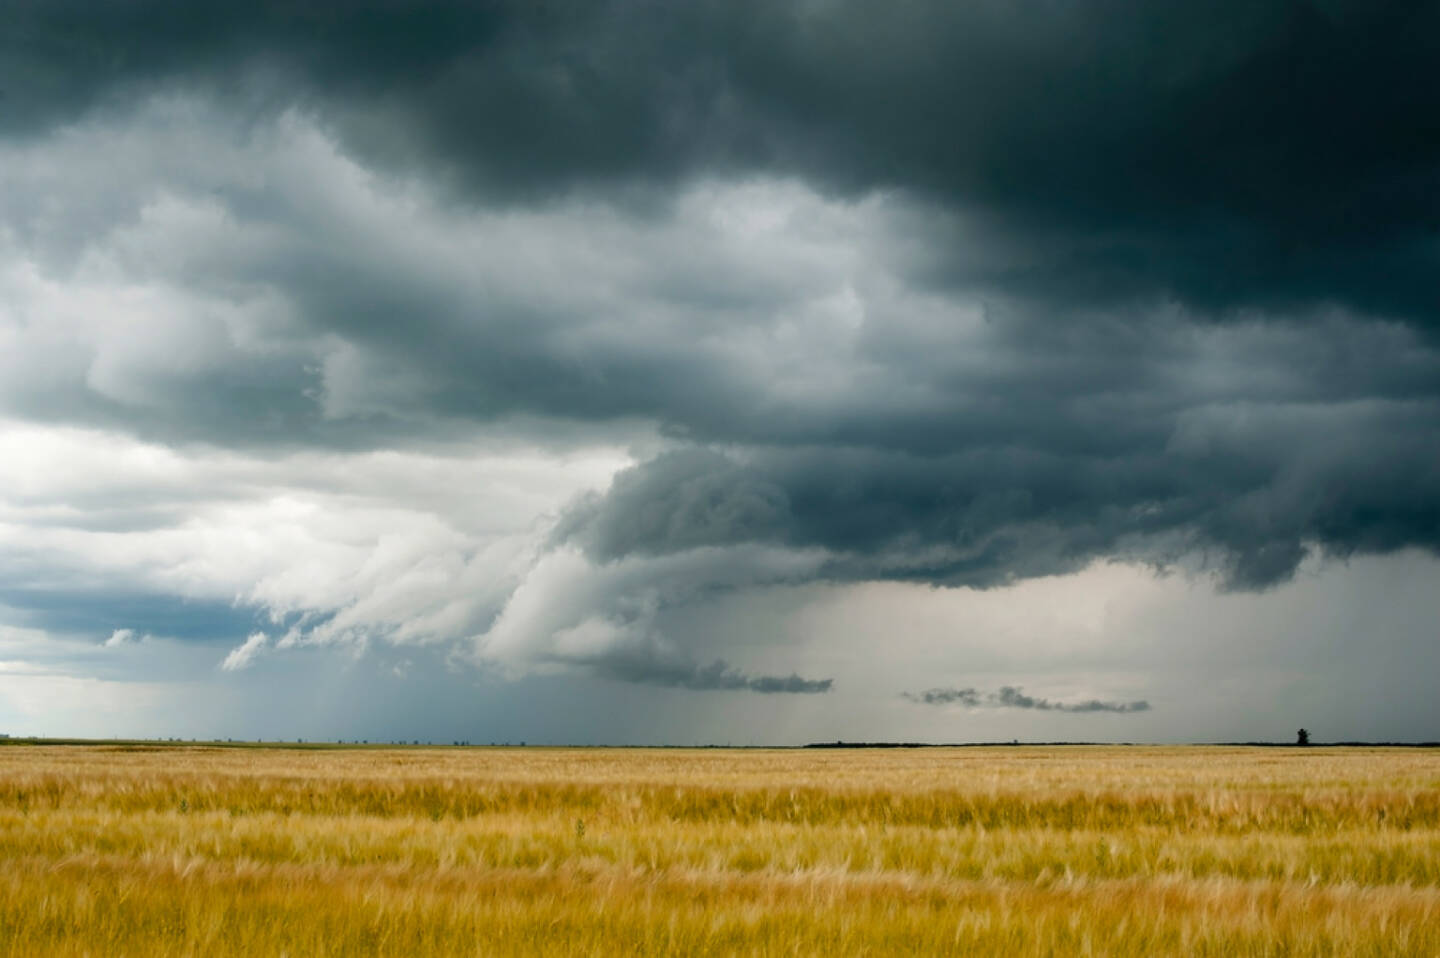 Wolken, dunkel, dunkle Wolken, Gewitter, Horizont, Feld, Weizen, Getreide, Schlechtwetter, Verdunklung, Sturm, http://www.shutterstock.com/de/pic-79450117/stock-photo-storm-dark-clouds-over-field.html 